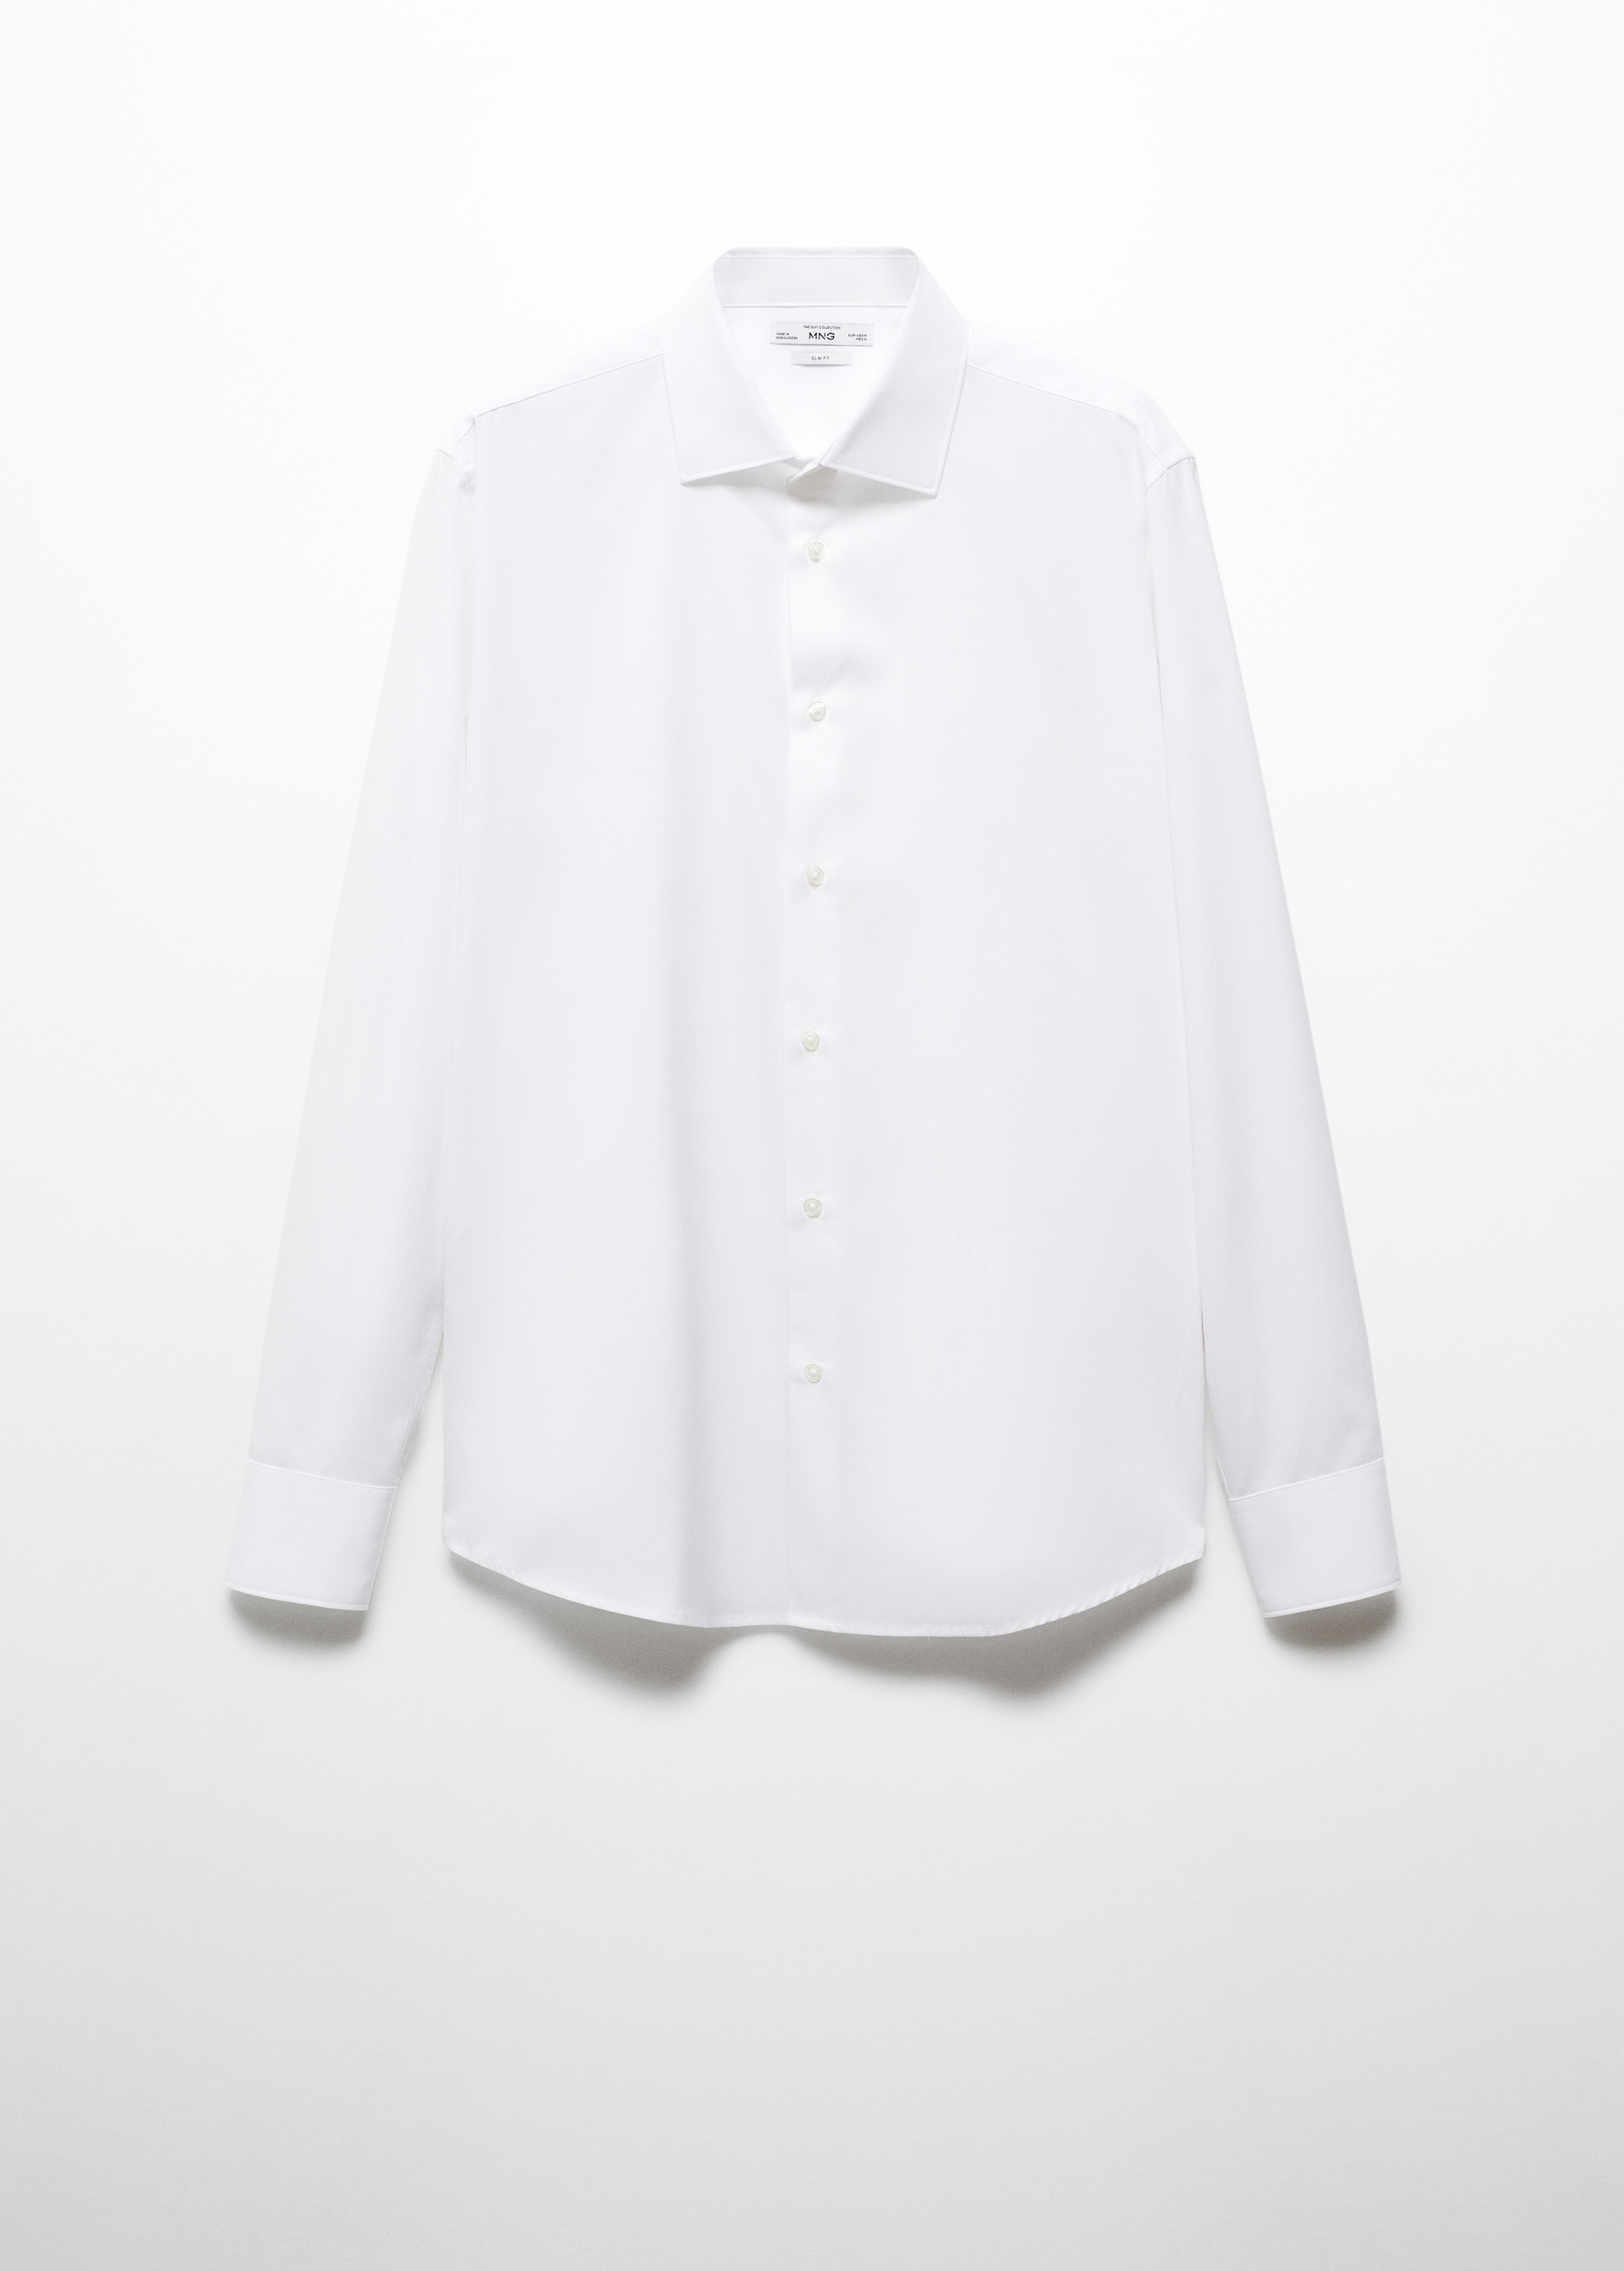 Camisa de fato de algodão e popelina slim fit  - Artigo sem modelo